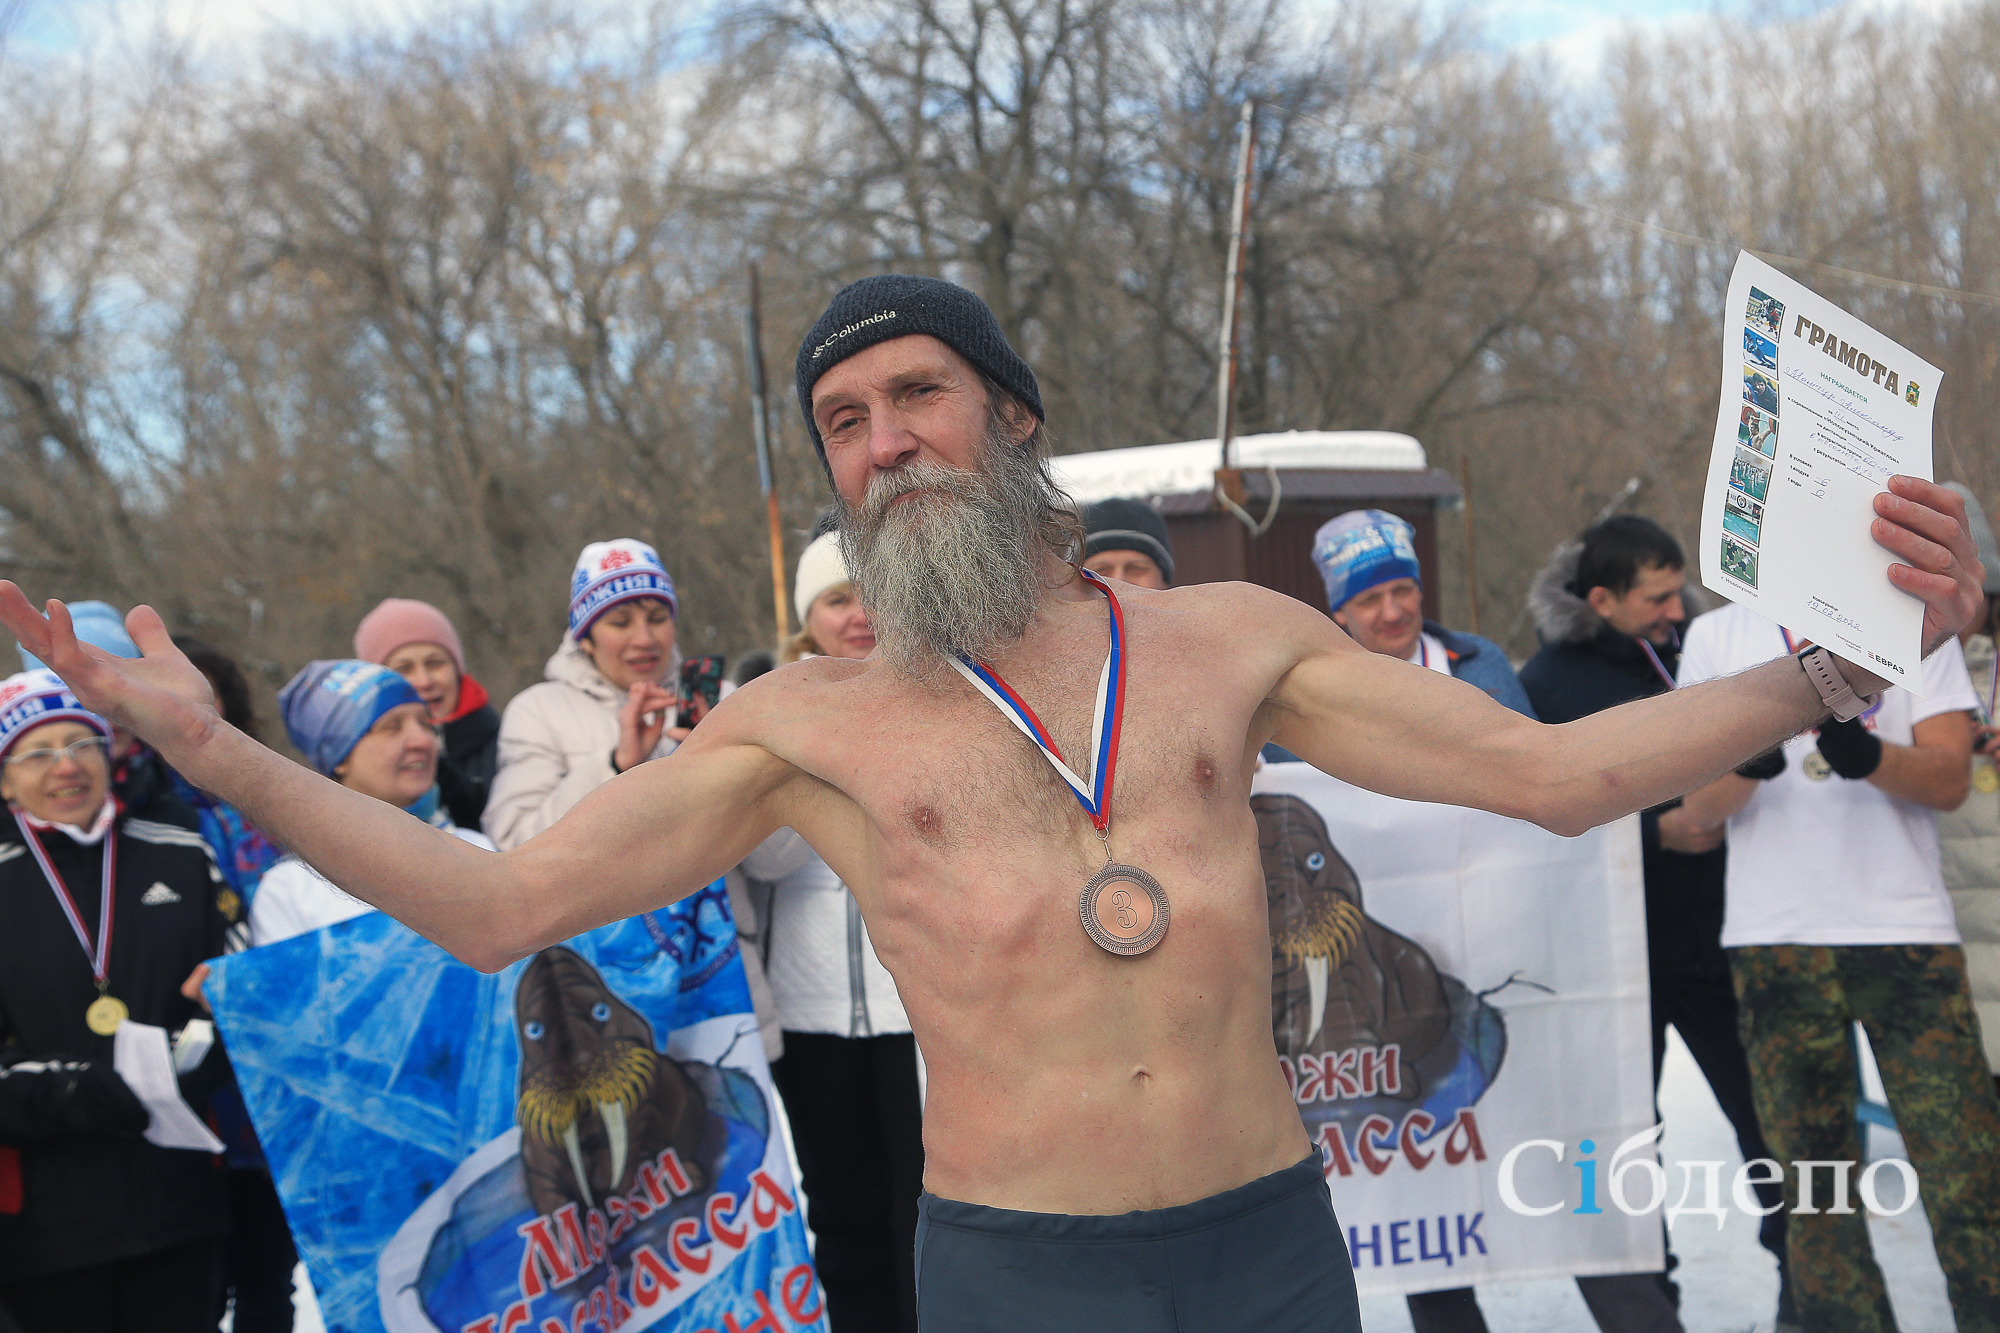 Бег в летней одежде, плавание в ледяной воде и лыжи: как в Новокузнецке прошли соревнования по криатлону